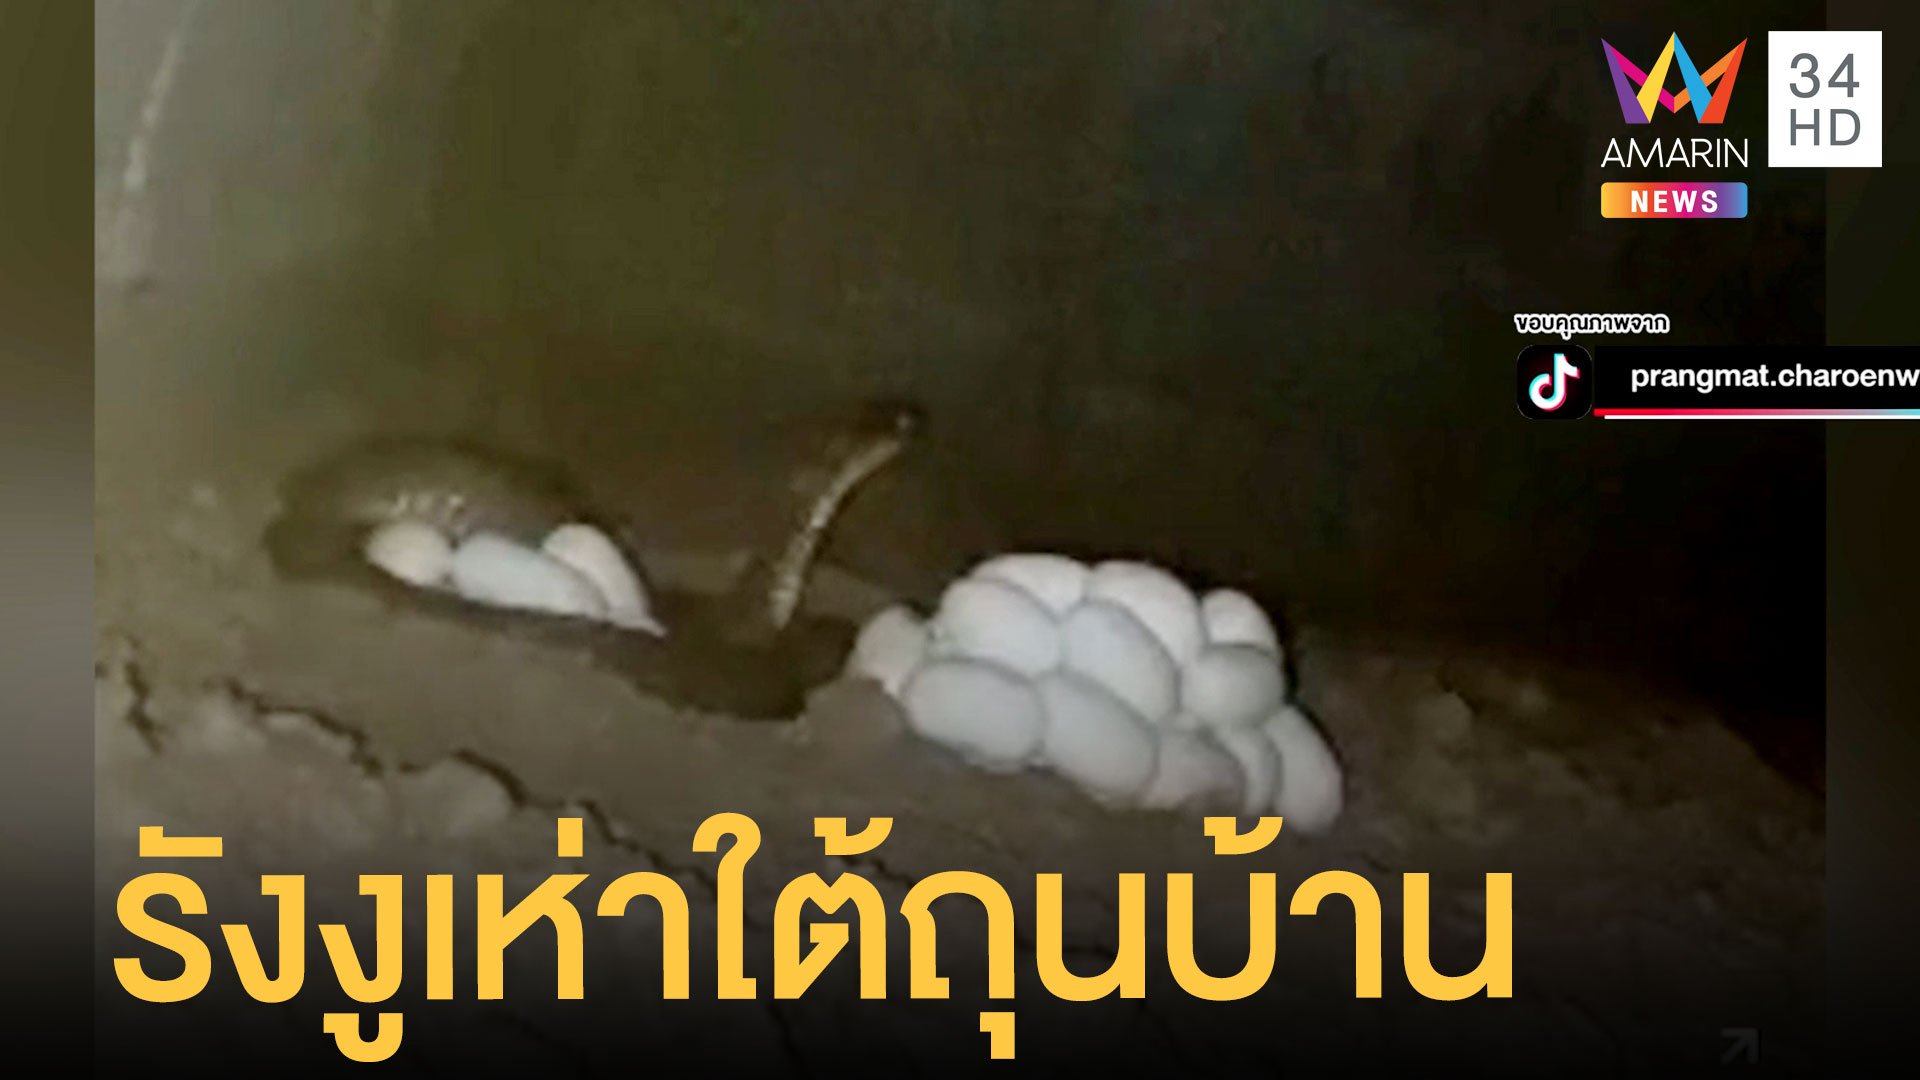 หนุ่มผงะรังงูเห่าใต้ถุนบ้าน 4 ตัว ไข่ 78 ฟอง | ข่าวอรุณอมรินทร์ | 19 เม.ย. 65 | AMARIN TVHD34